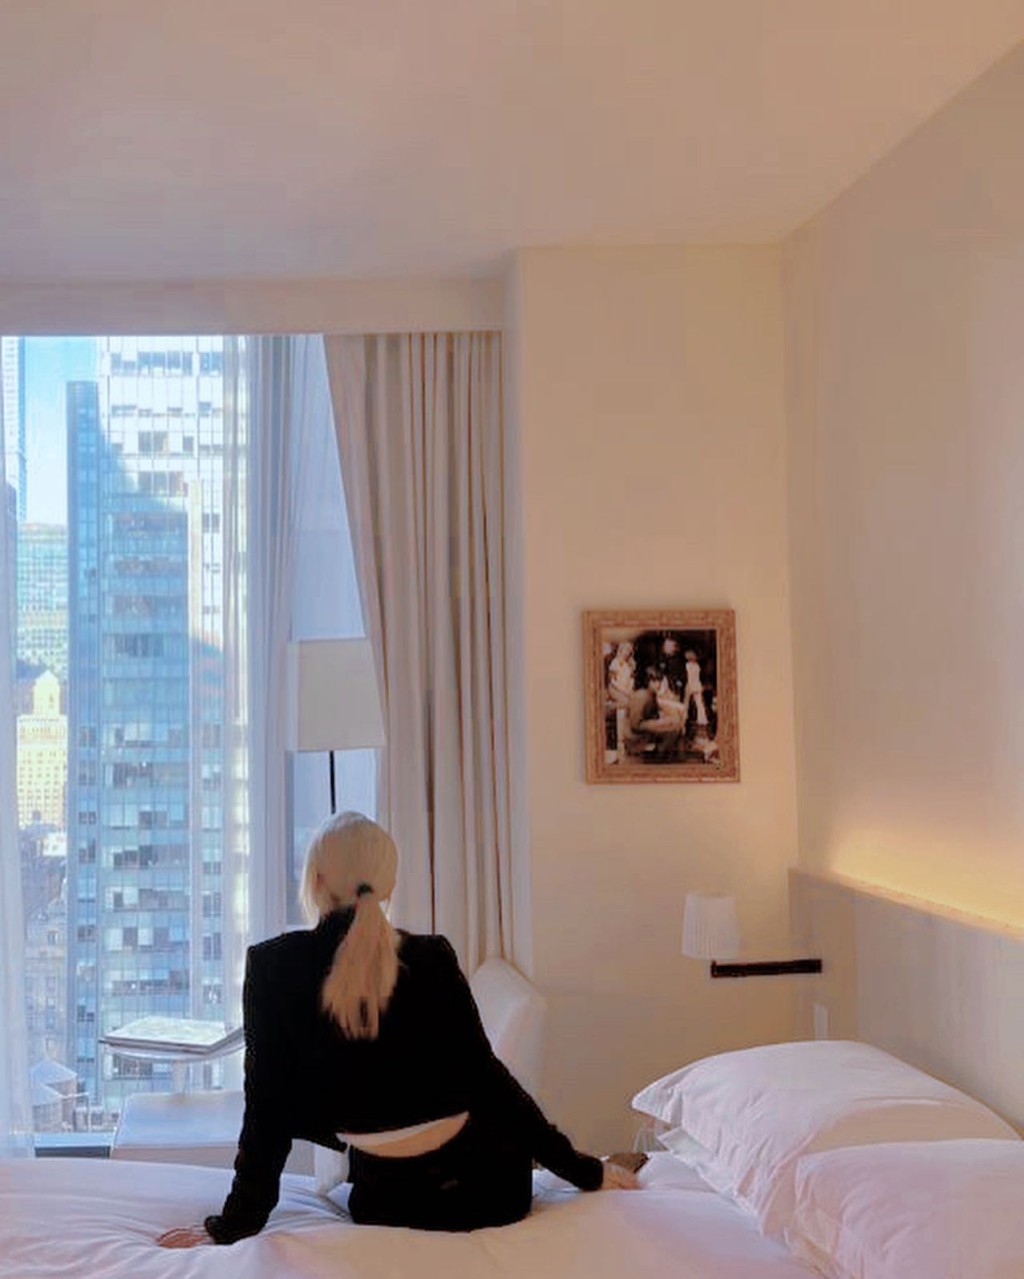 在紐約入住五星級酒店當然要打卡。